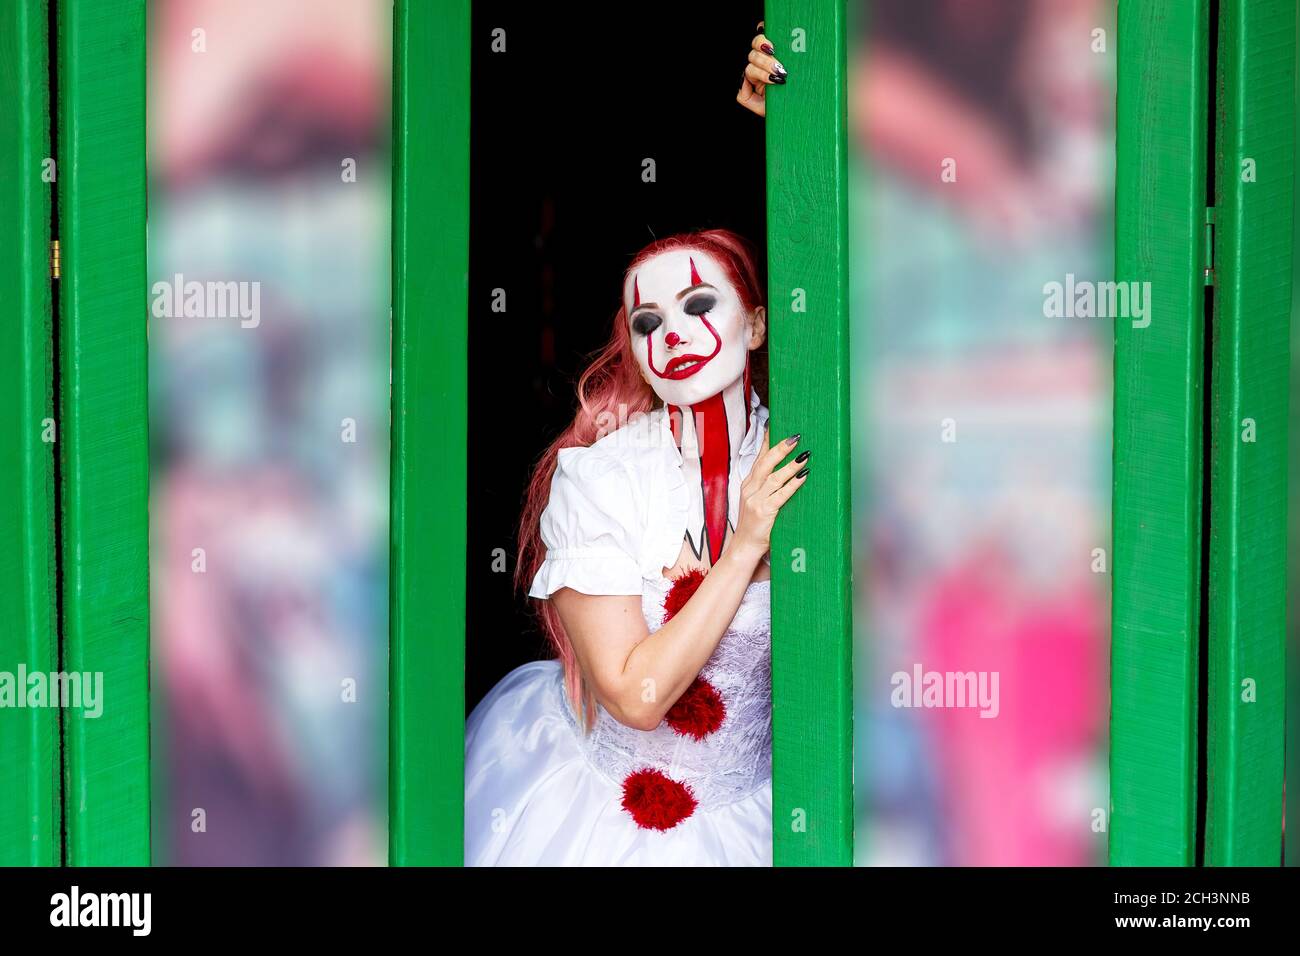 Chica con pelo largo y rojo maquillaje en su cara para Halloween en un vestido  blanco en forma de payaso se encuentra en la puerta con sus ojos cerrados,  Hallo Fotografía de